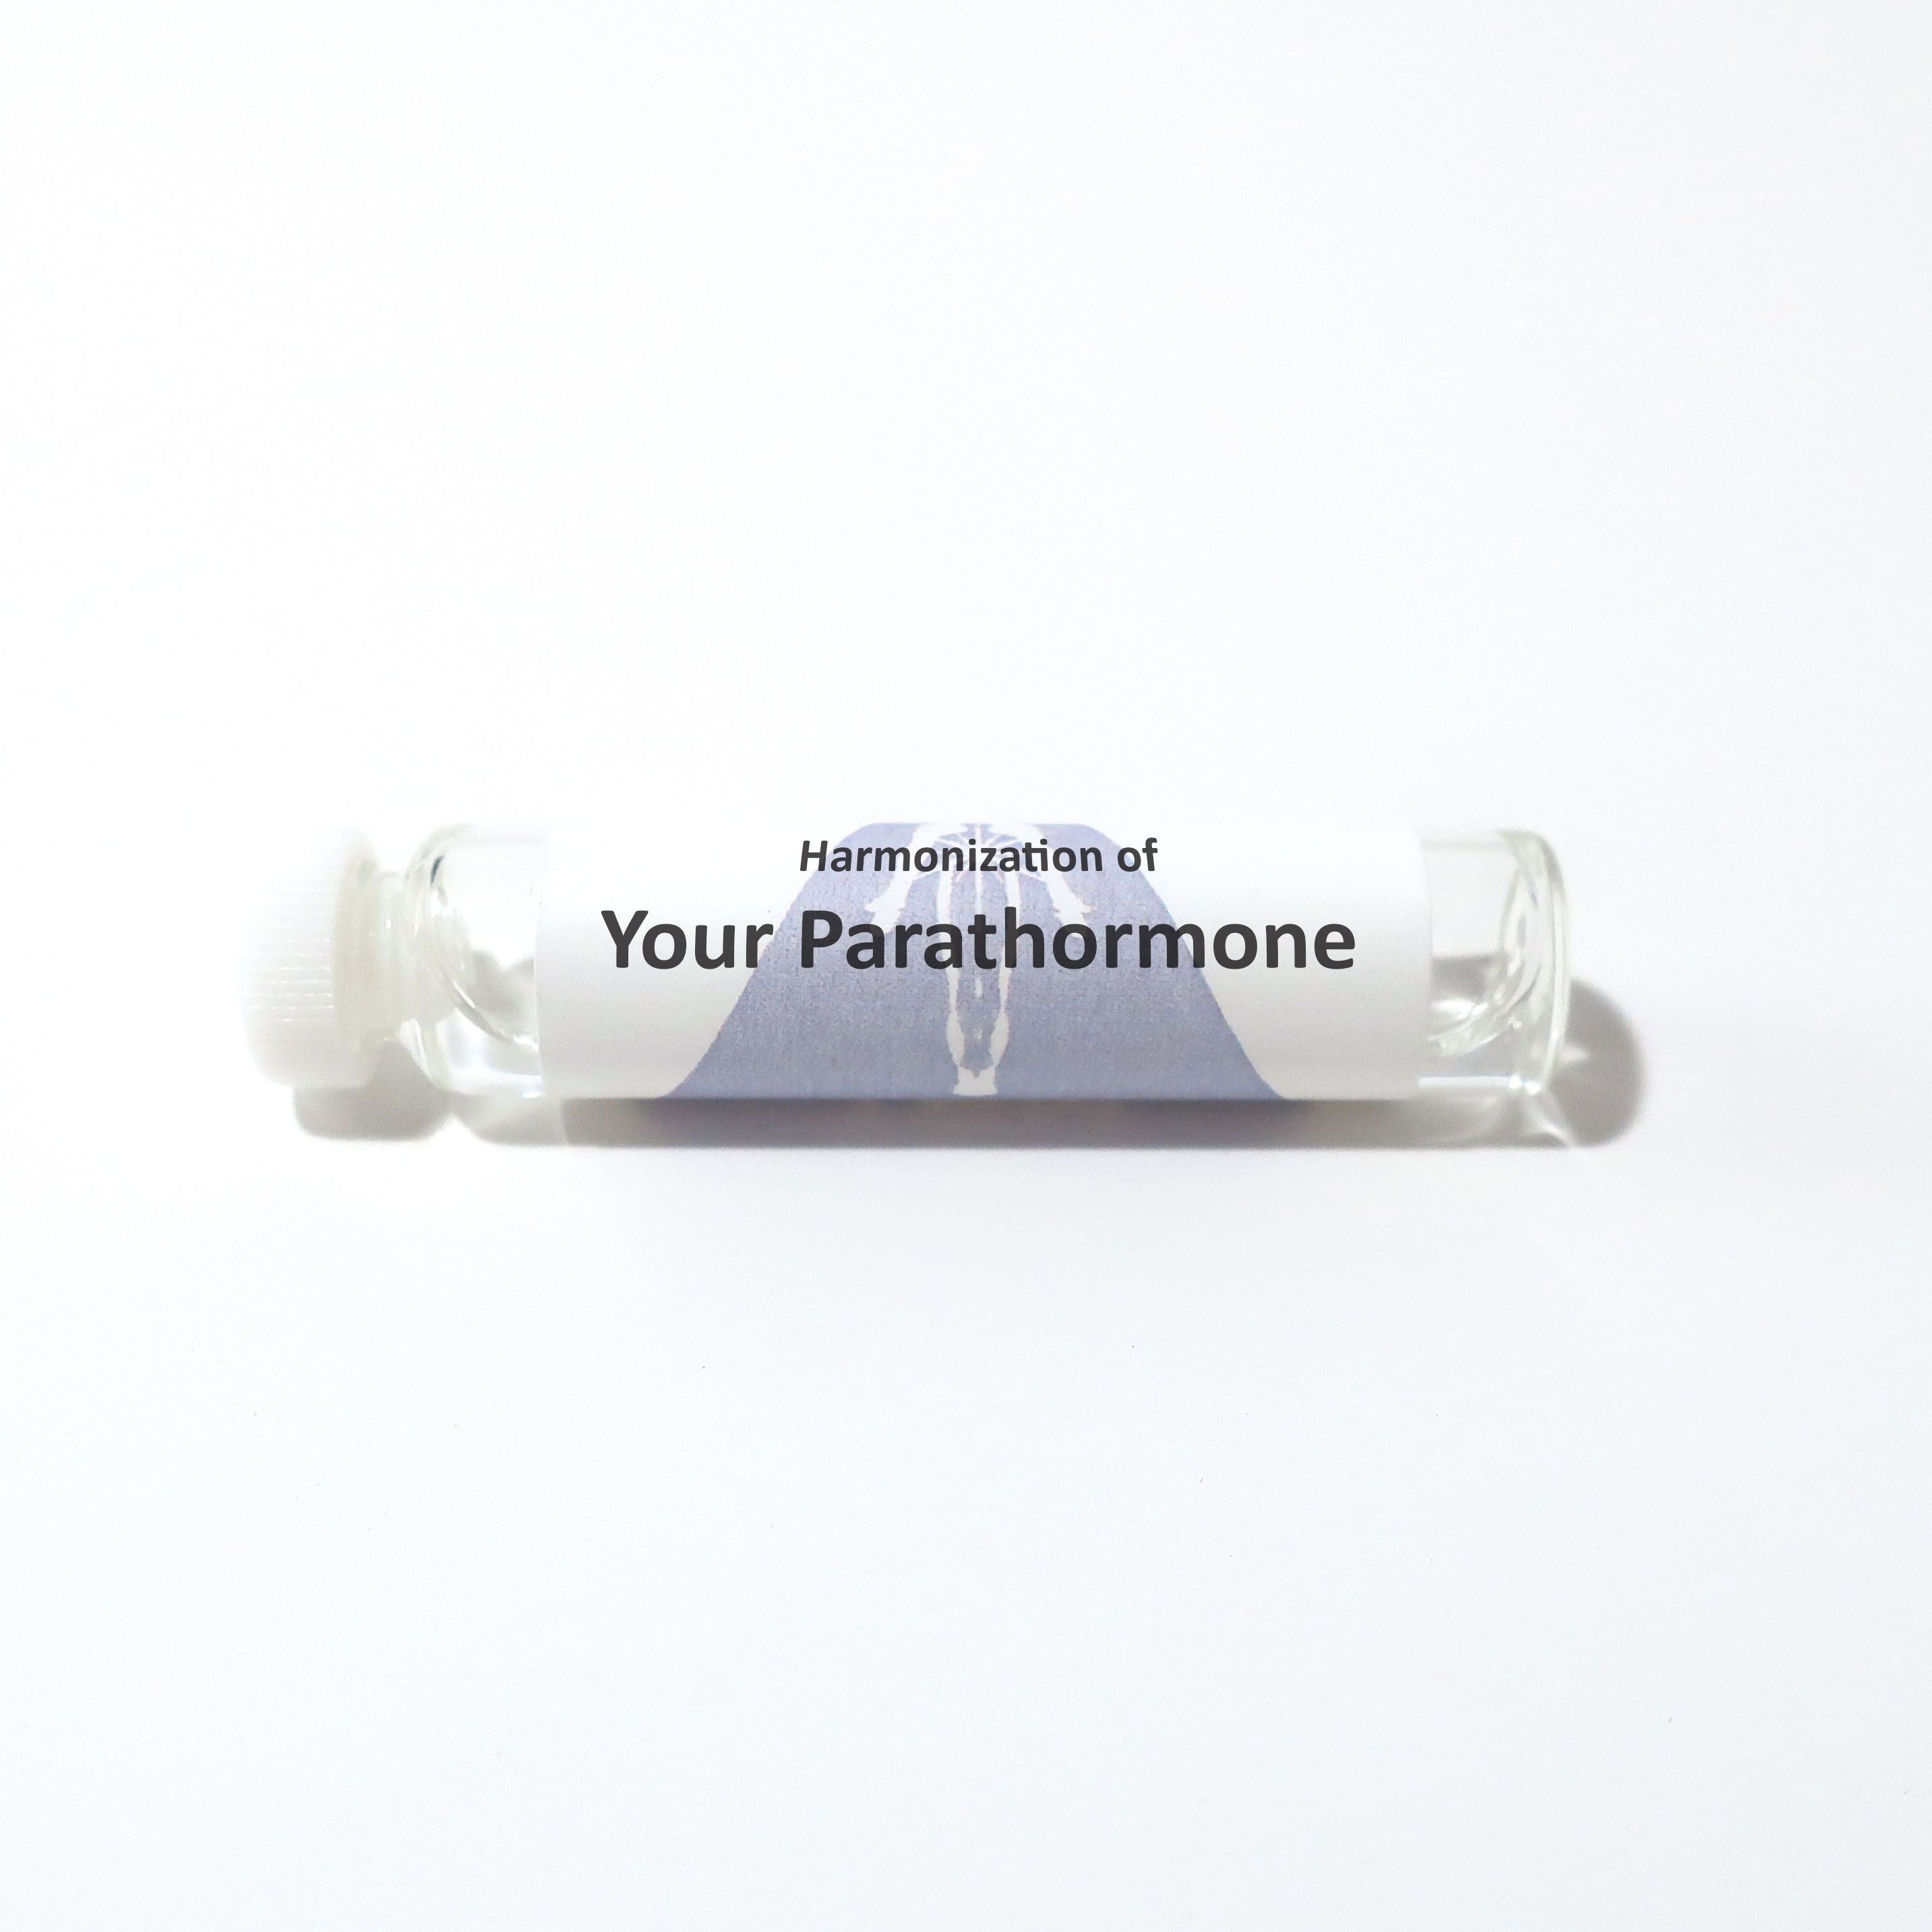 Your Parathormone